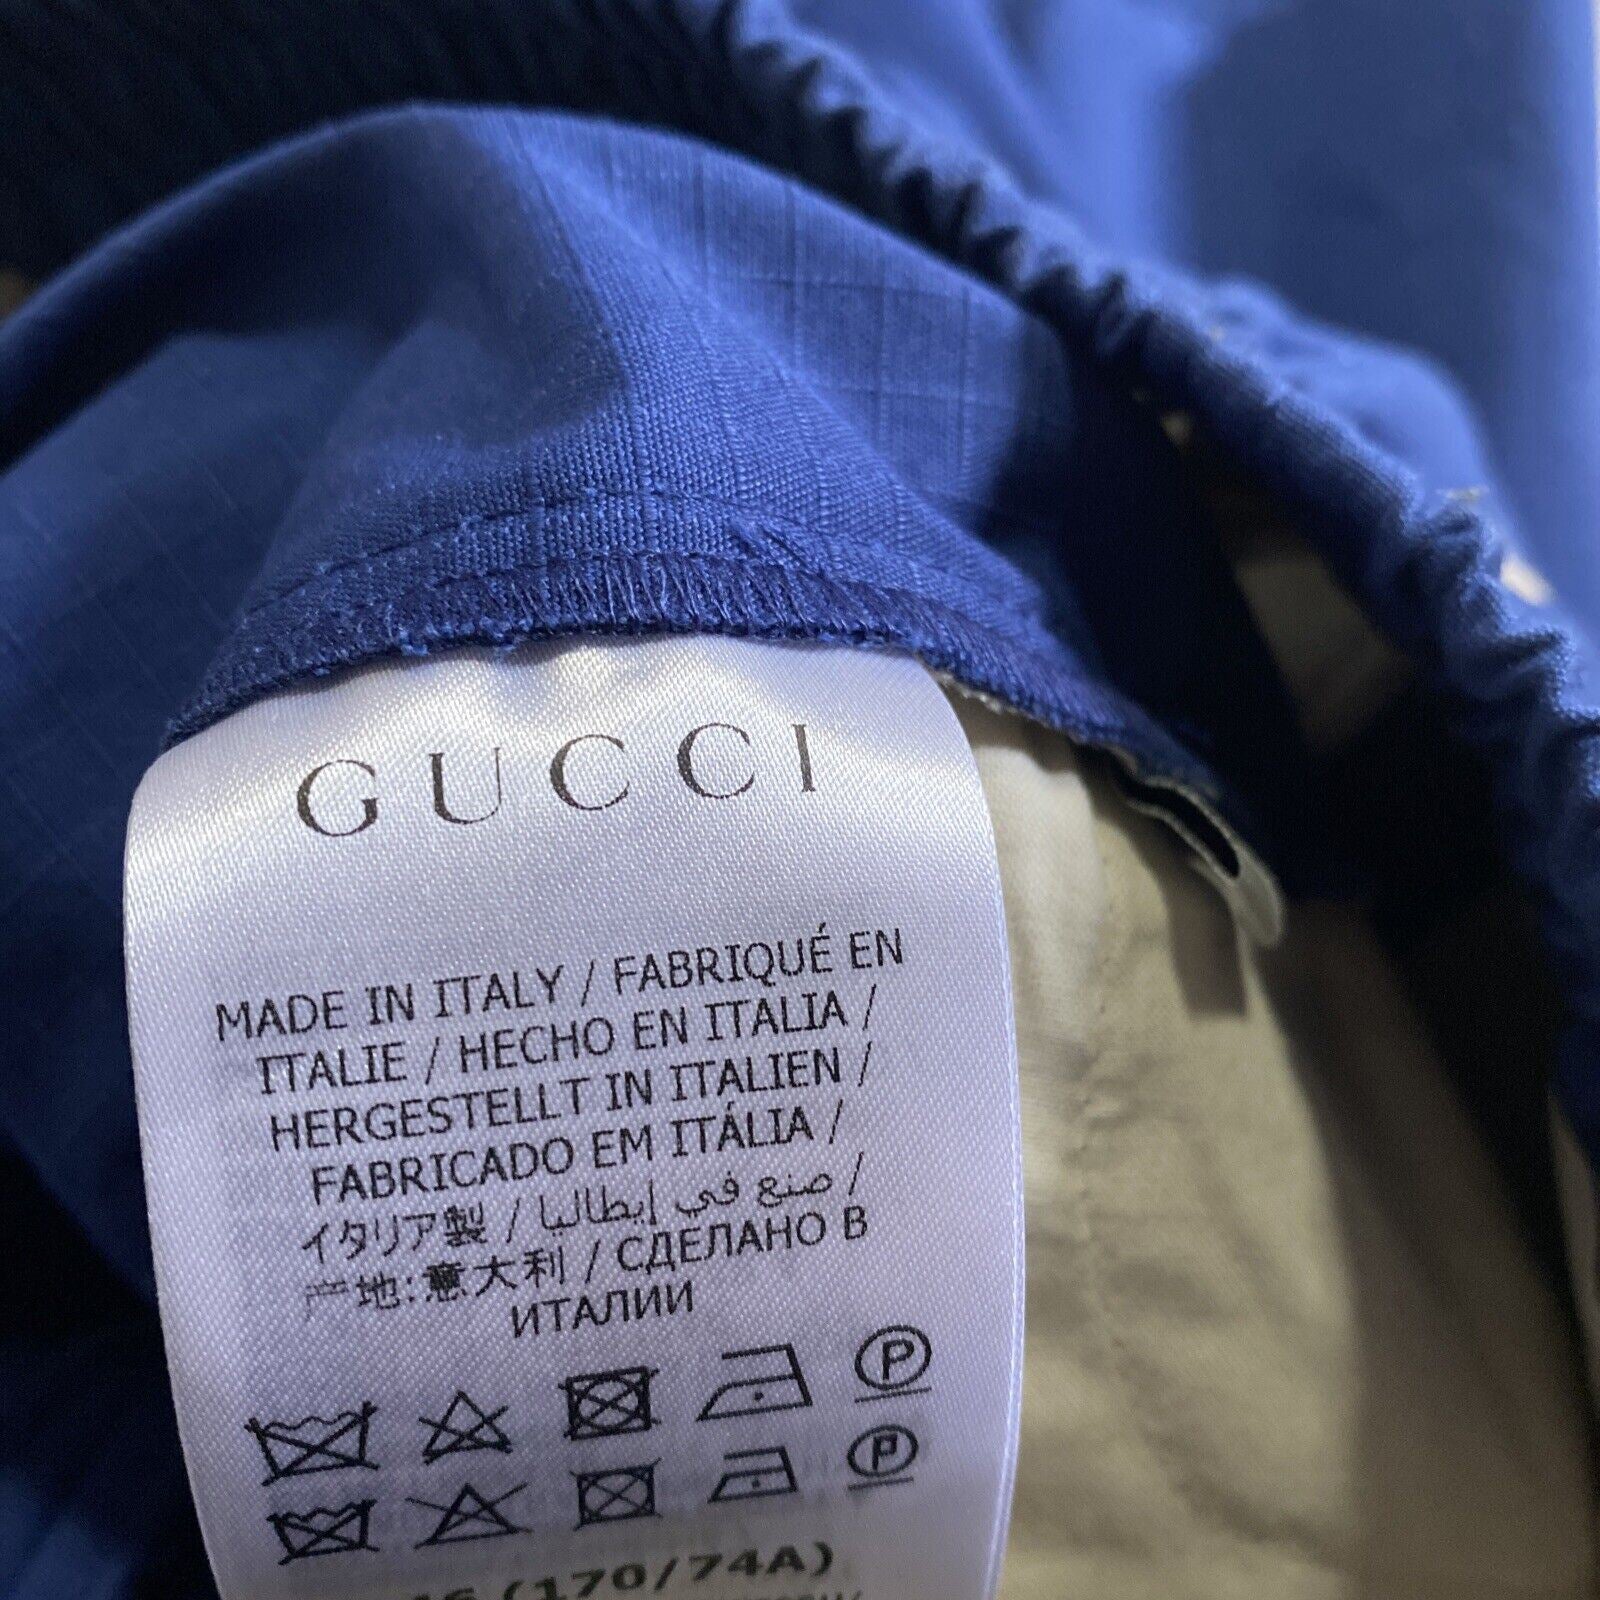 Neu mit Etikett: 1450 $ Gucci Herren-Shorts mit Gucci-Monogramm, Blau, 30 US/46 Eu